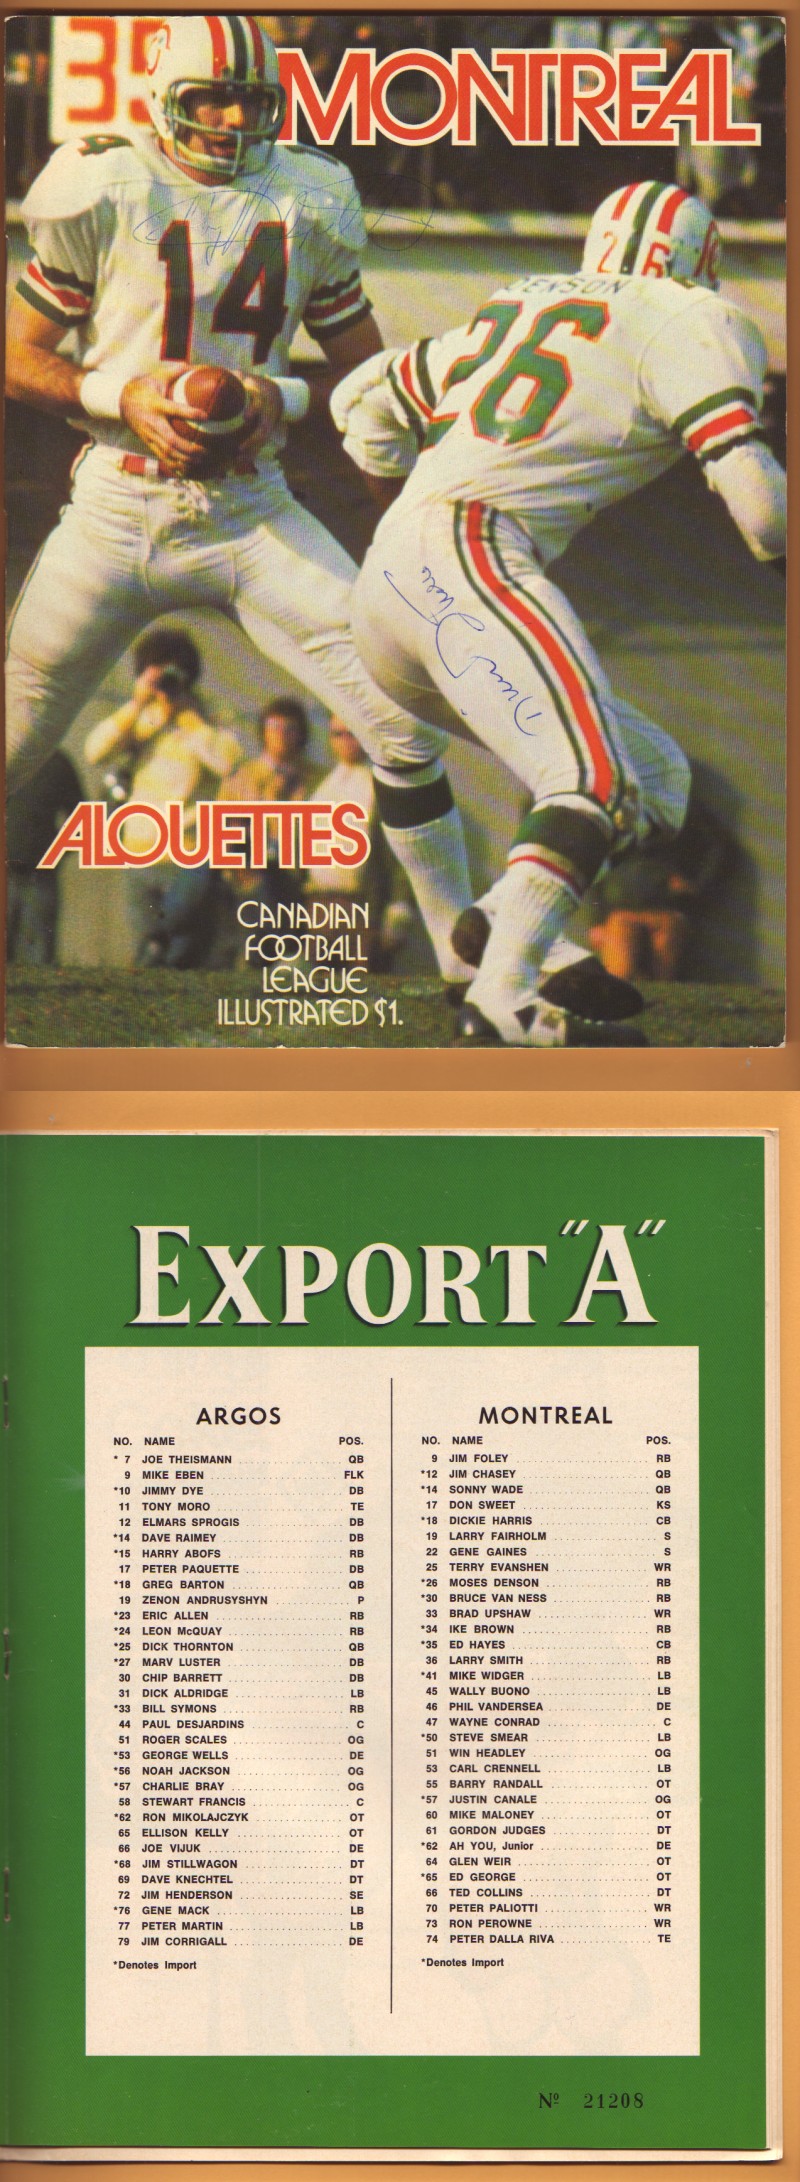 1972 CFL MONTREAL ALOUETTES VS TORONTO ARGOS PROGRAM photo